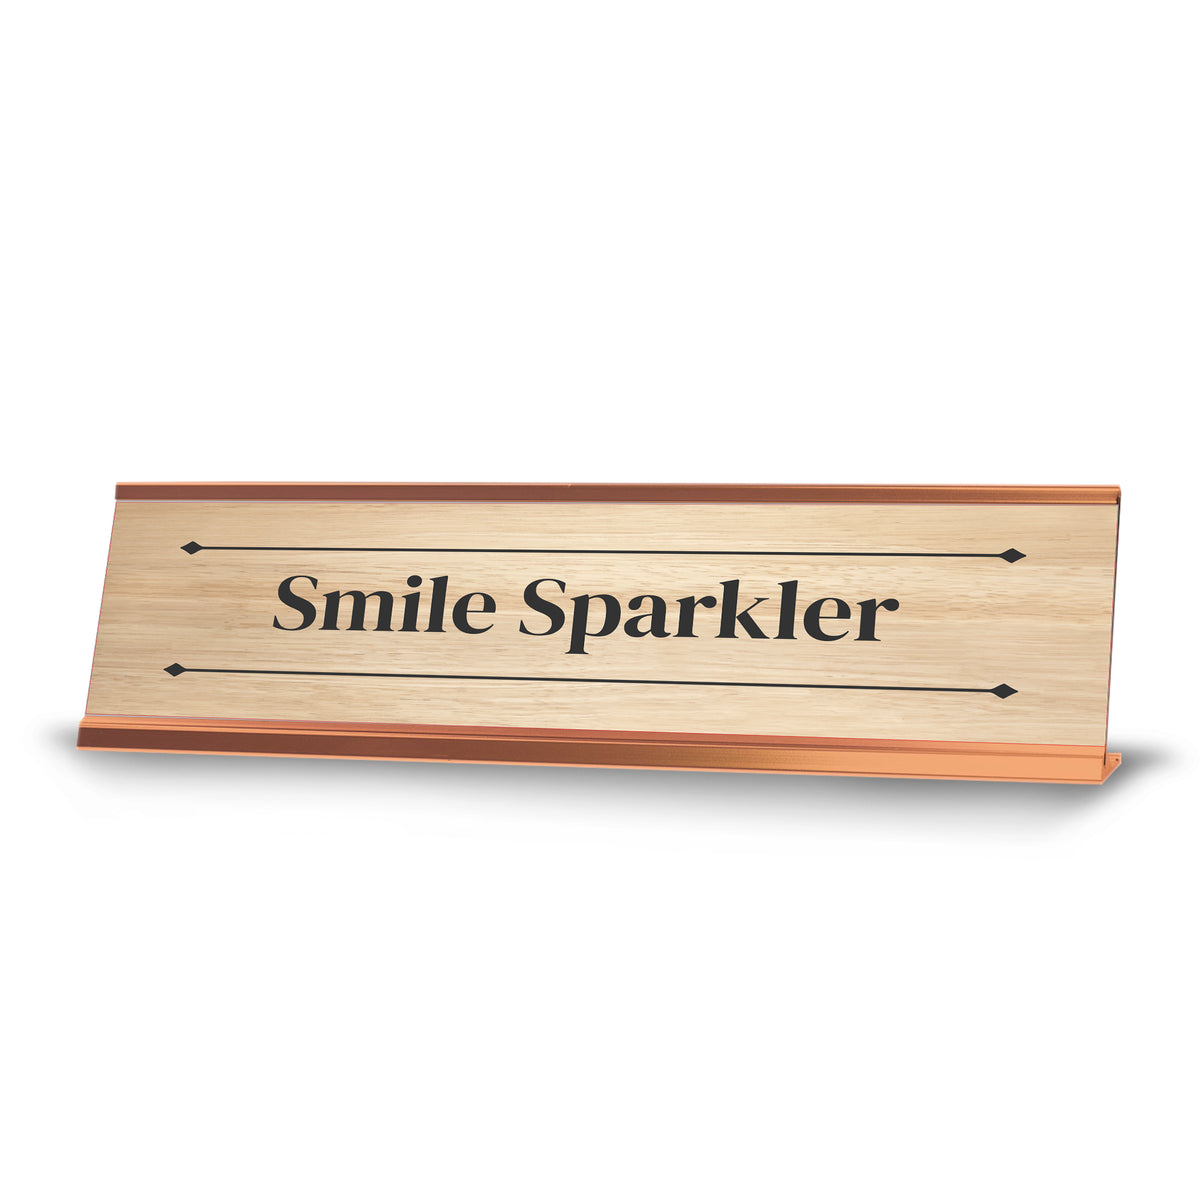 Smile Sparkler Rose Gold Frame Desk Sign (2x8") | Novelty Workplace and Home Office Decoration For Him